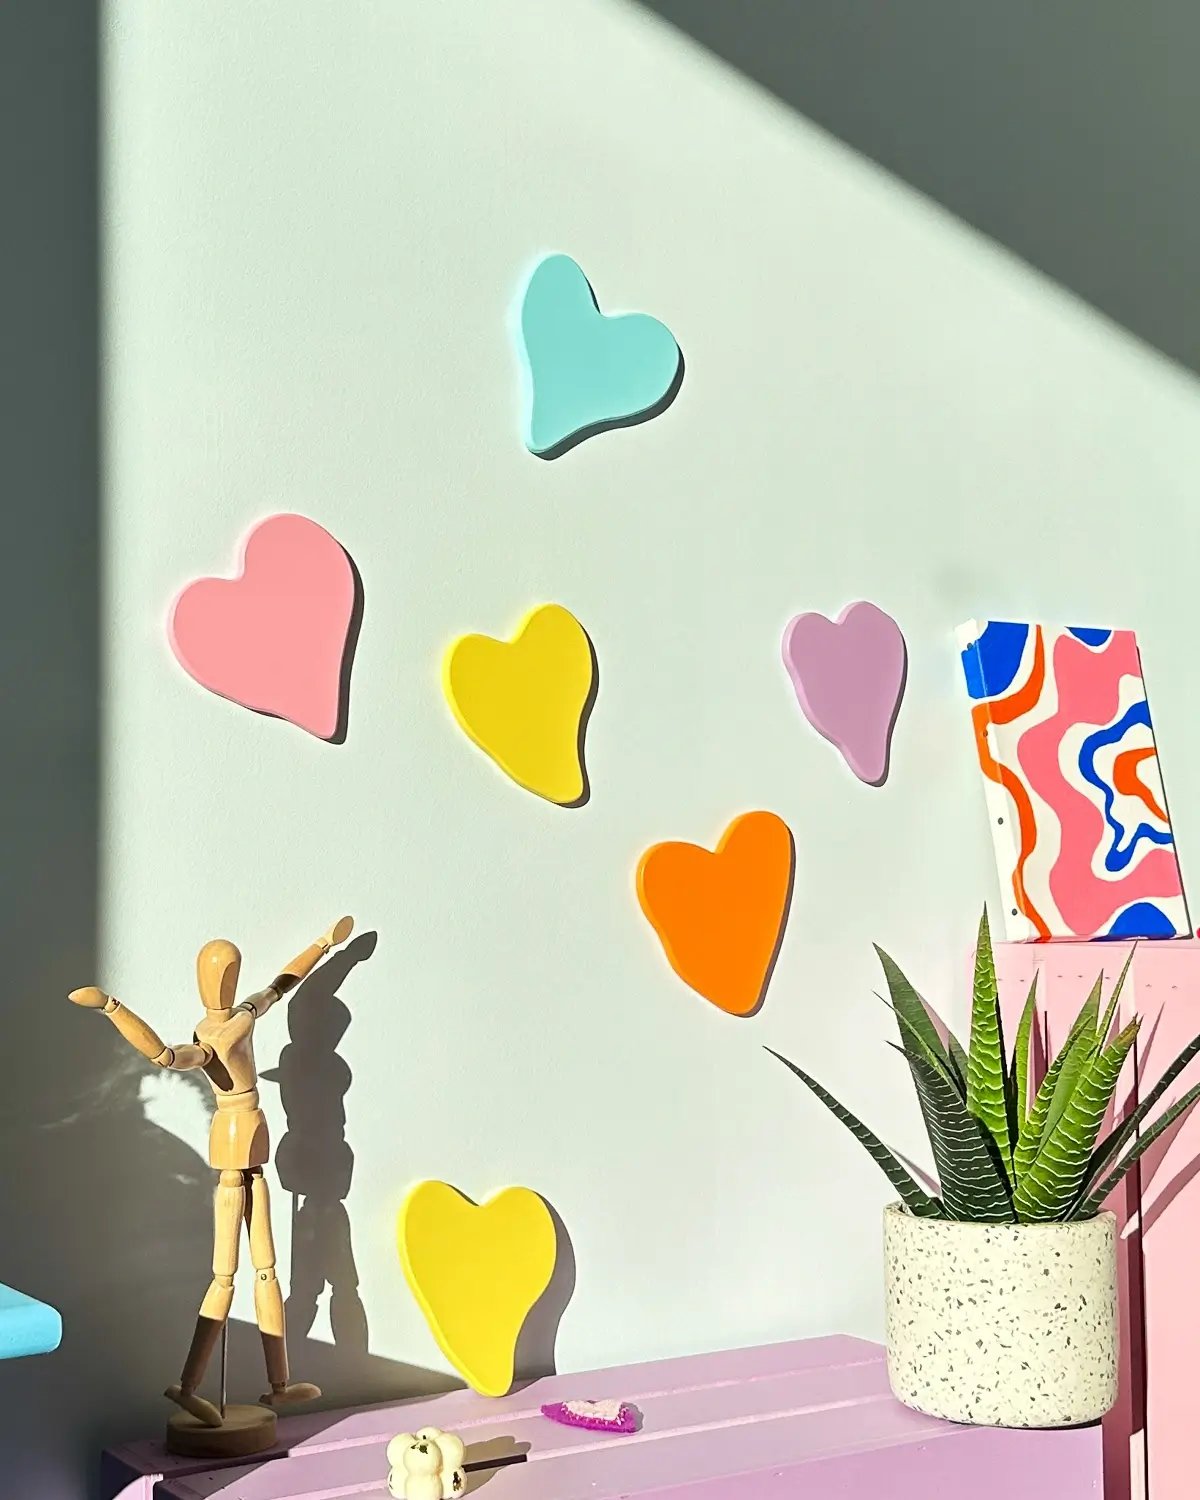 Les coeurs en pastel rose, bleu aqua, et jaune vibrant ajoutent une touche colorée et romantique à l'espace intérieur. Décoration murale moderne et minimaliste parfaite pour une chambre ou un salon.